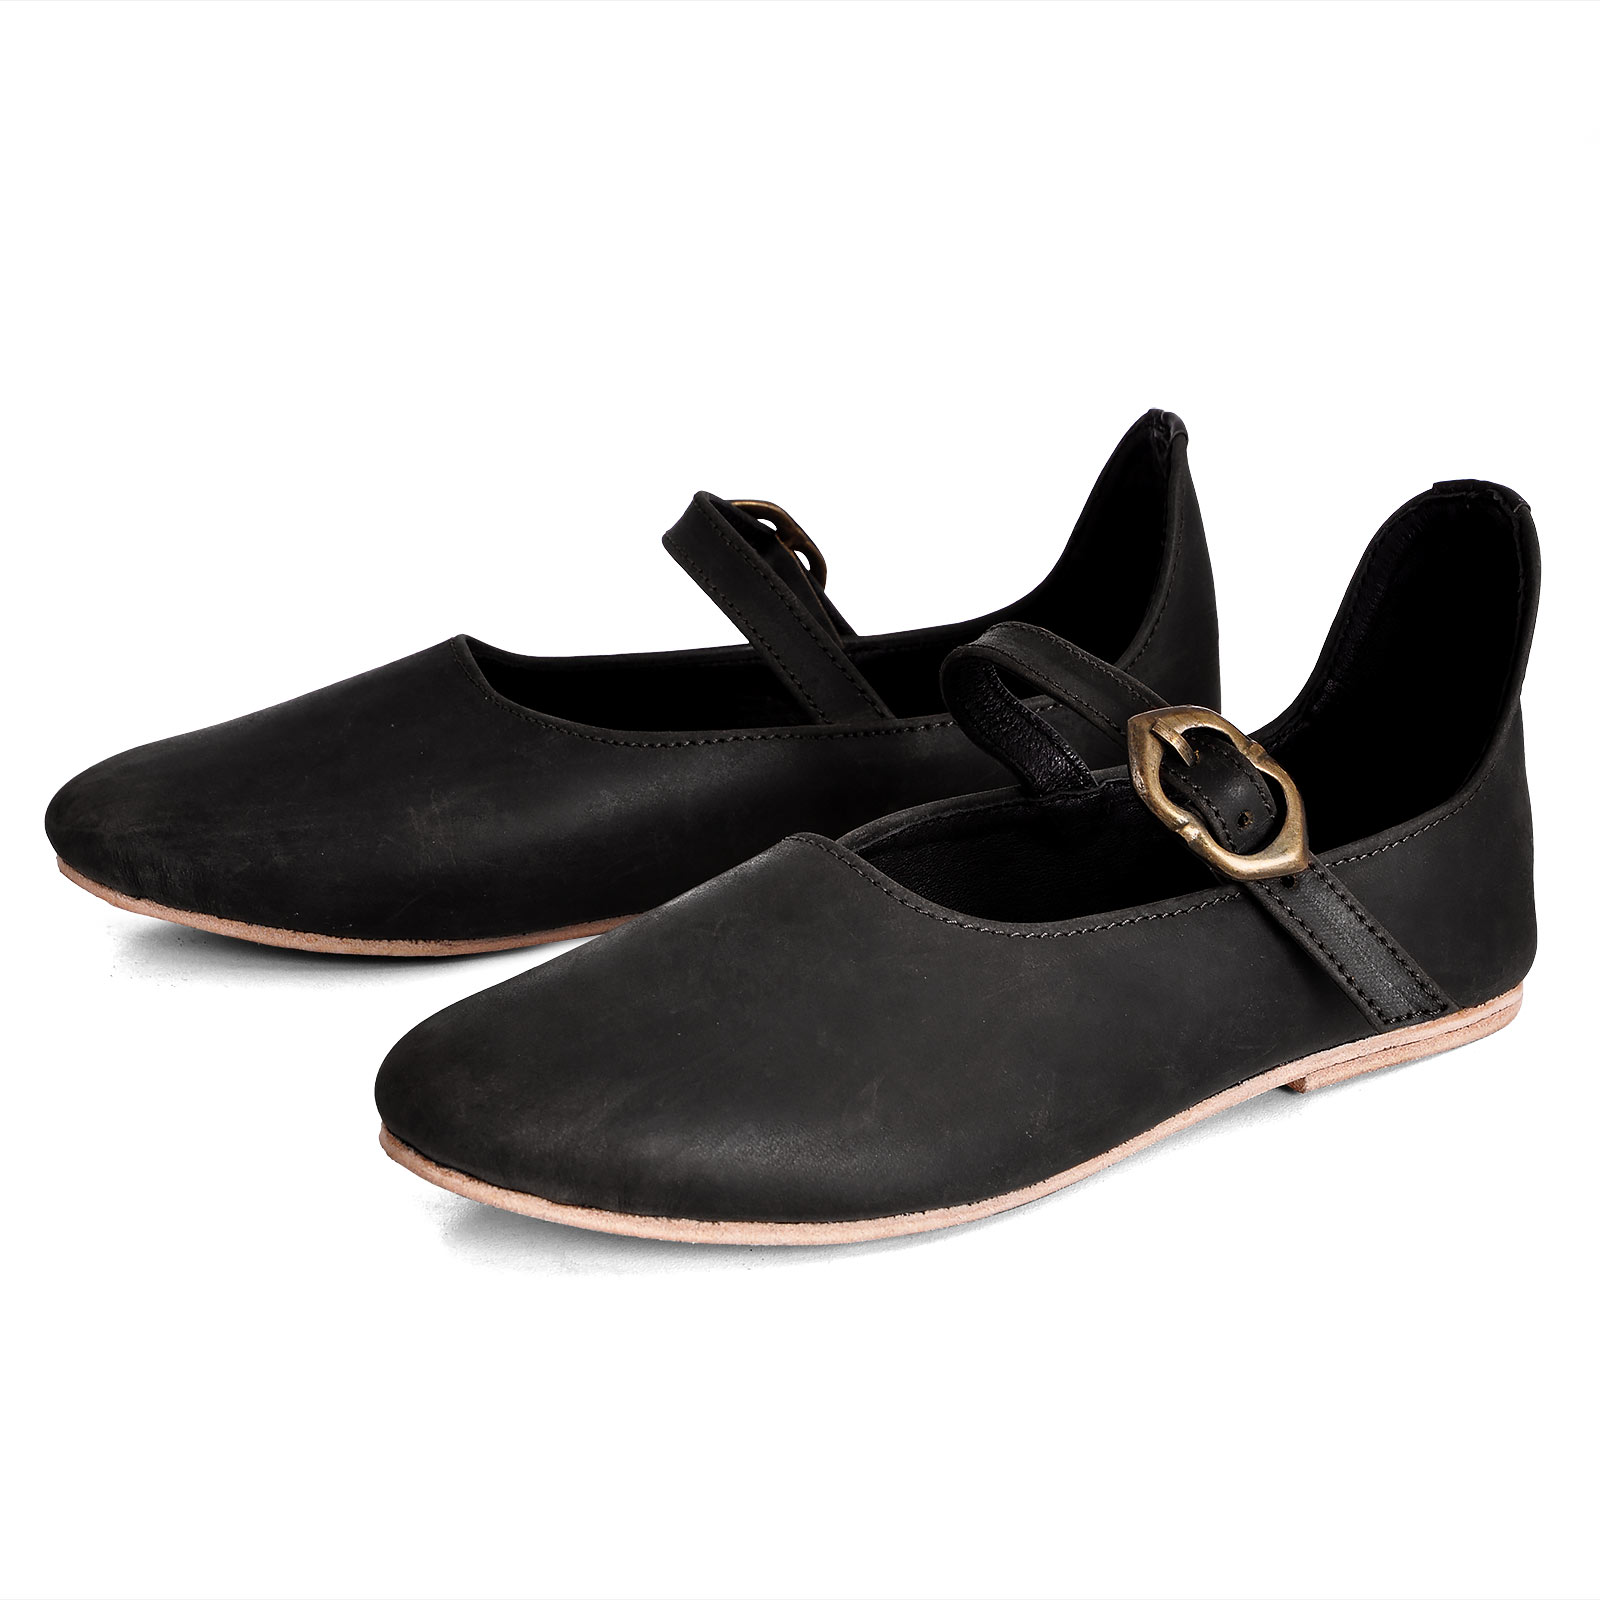 Mittelalter Schuhe Cecilie Damen schwarz